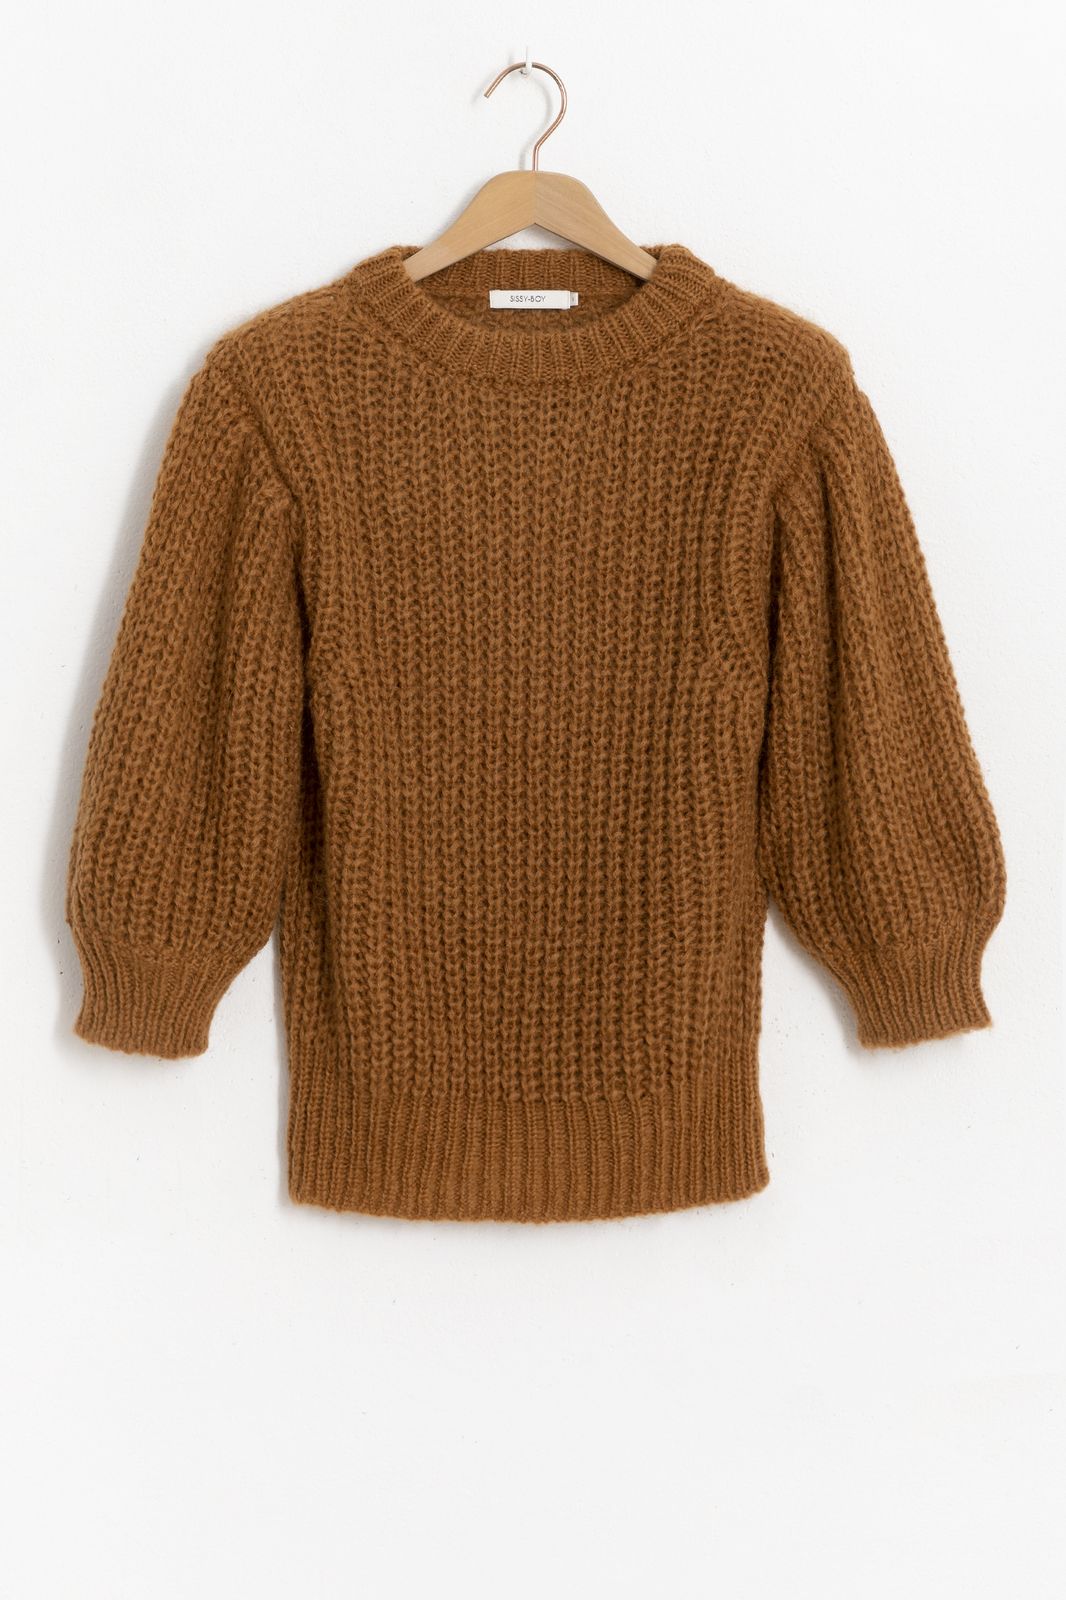 Bruine knit sweater met pofmouwen